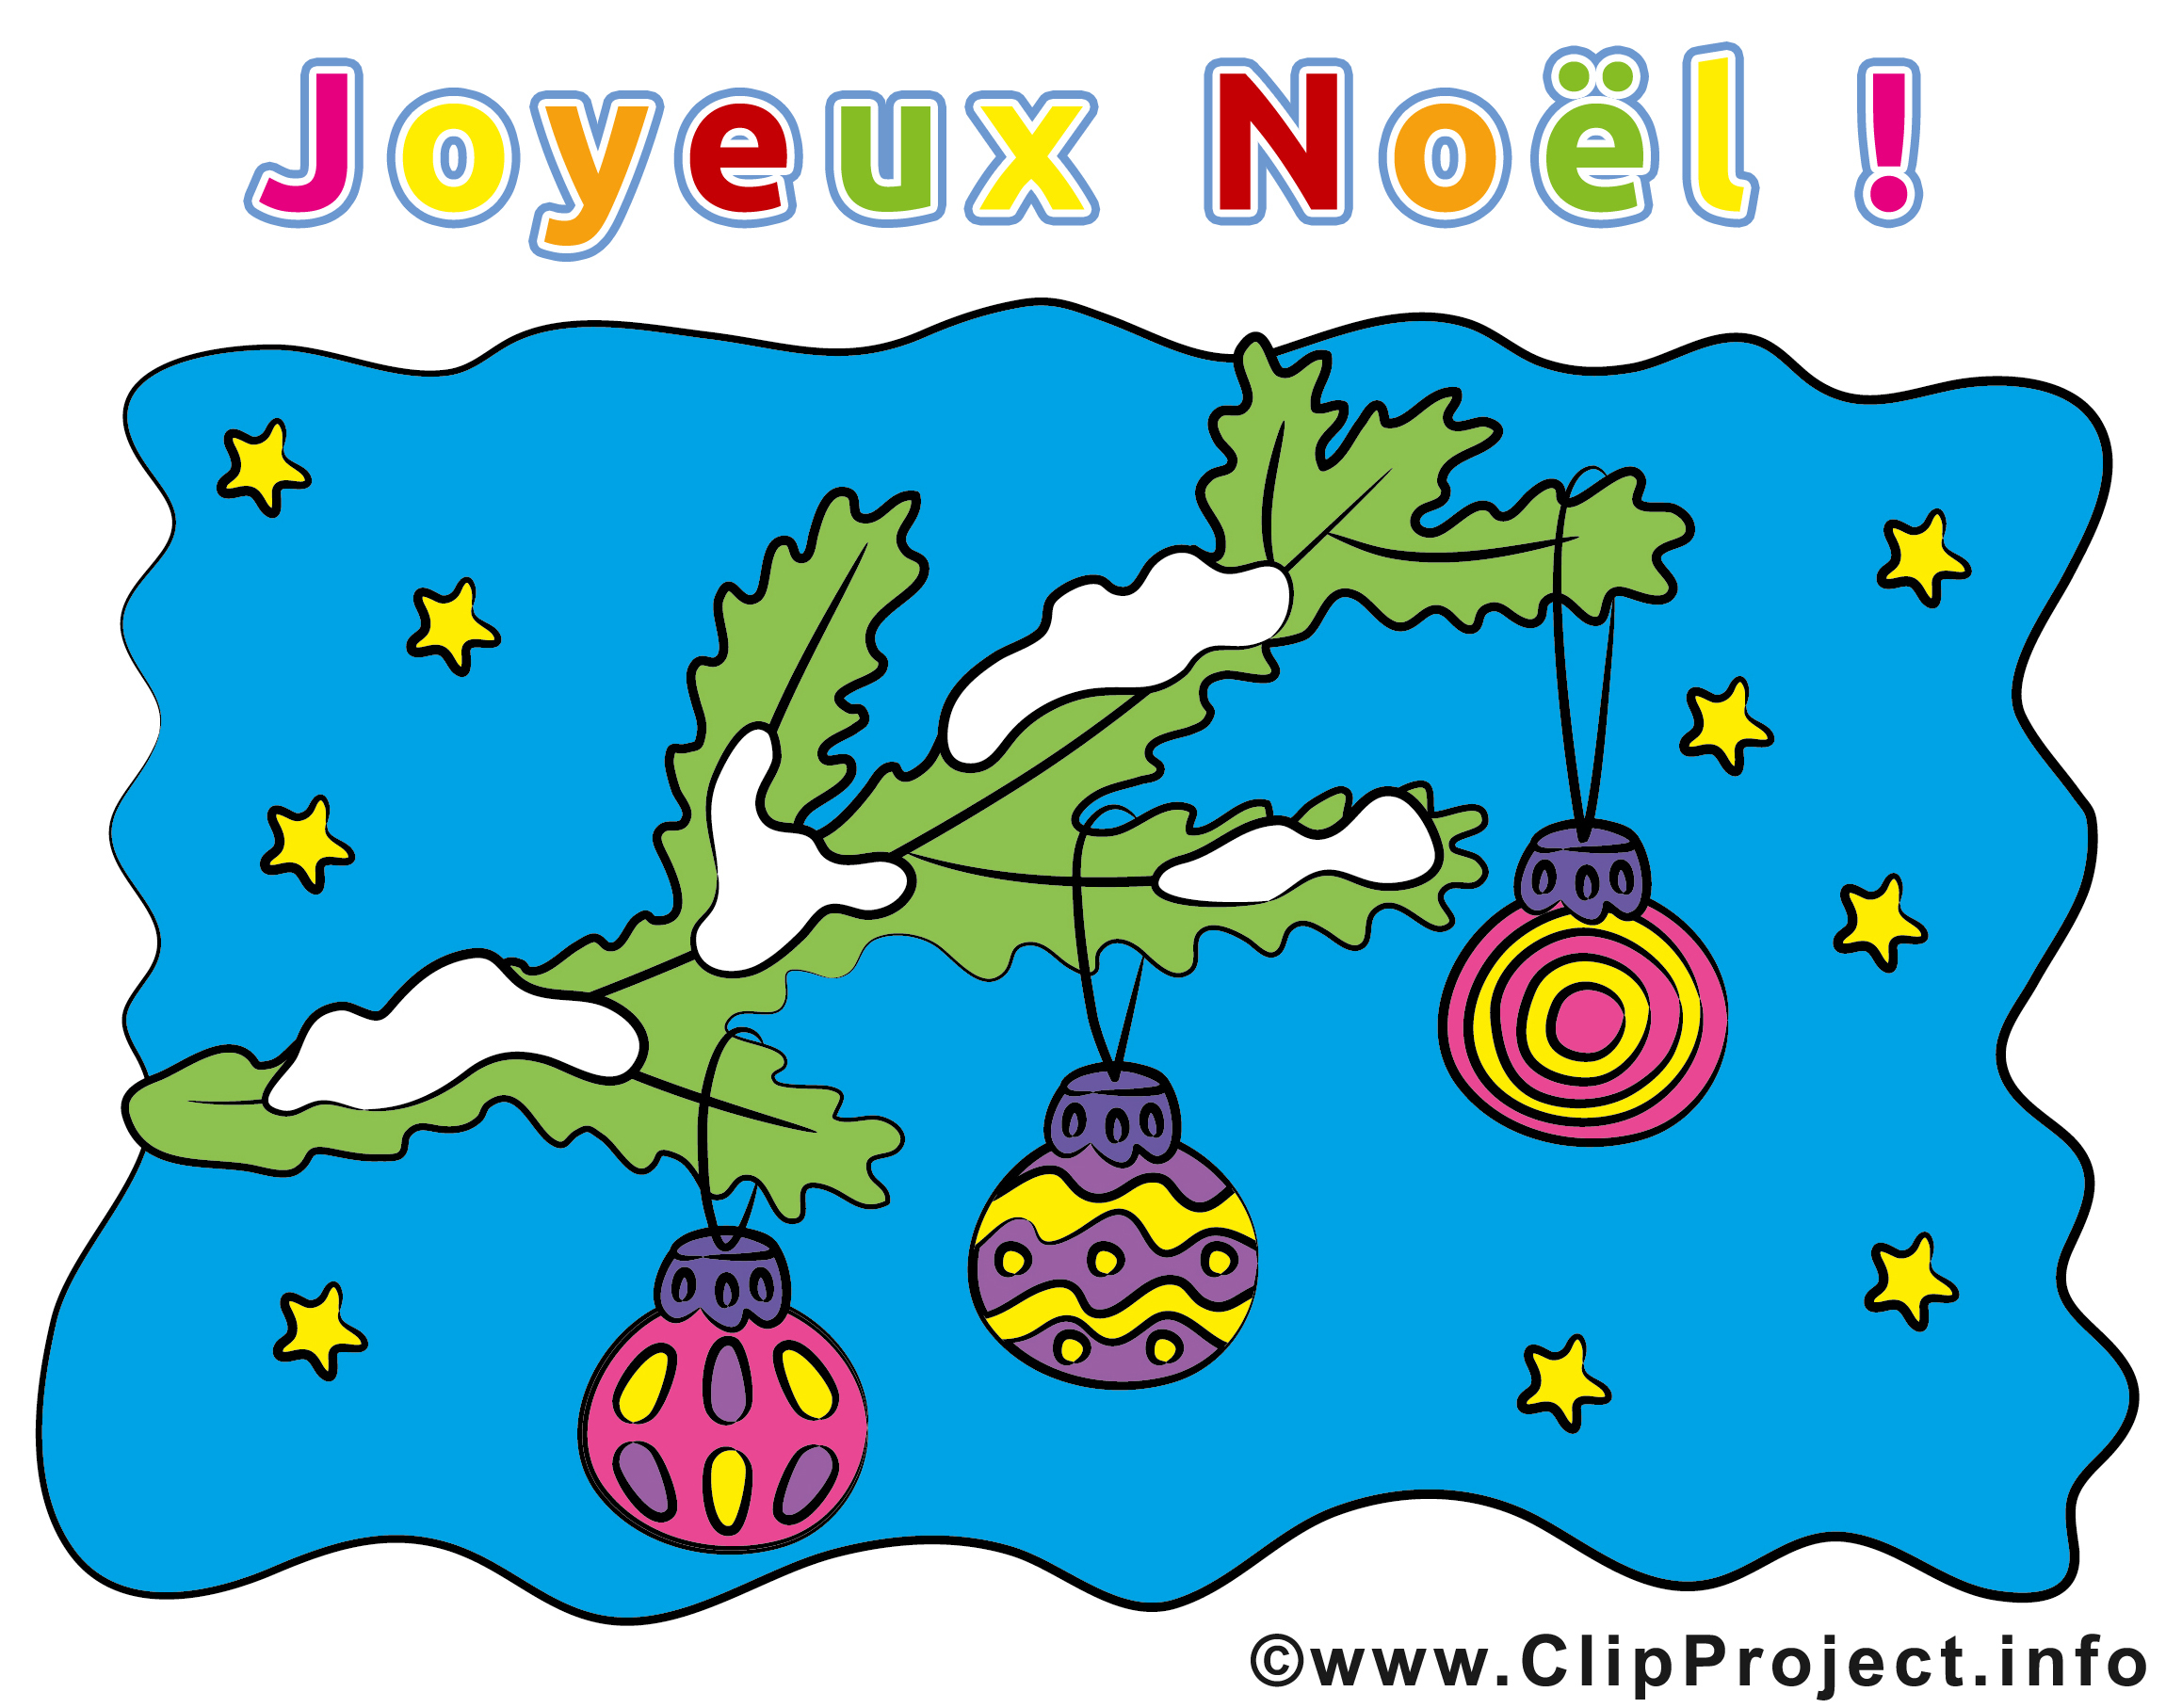 Carte Noël - E-Cartes - Cartes De Noël Dessin, Picture, Image, Graphic dedans Cartes De Noel A Imprimer